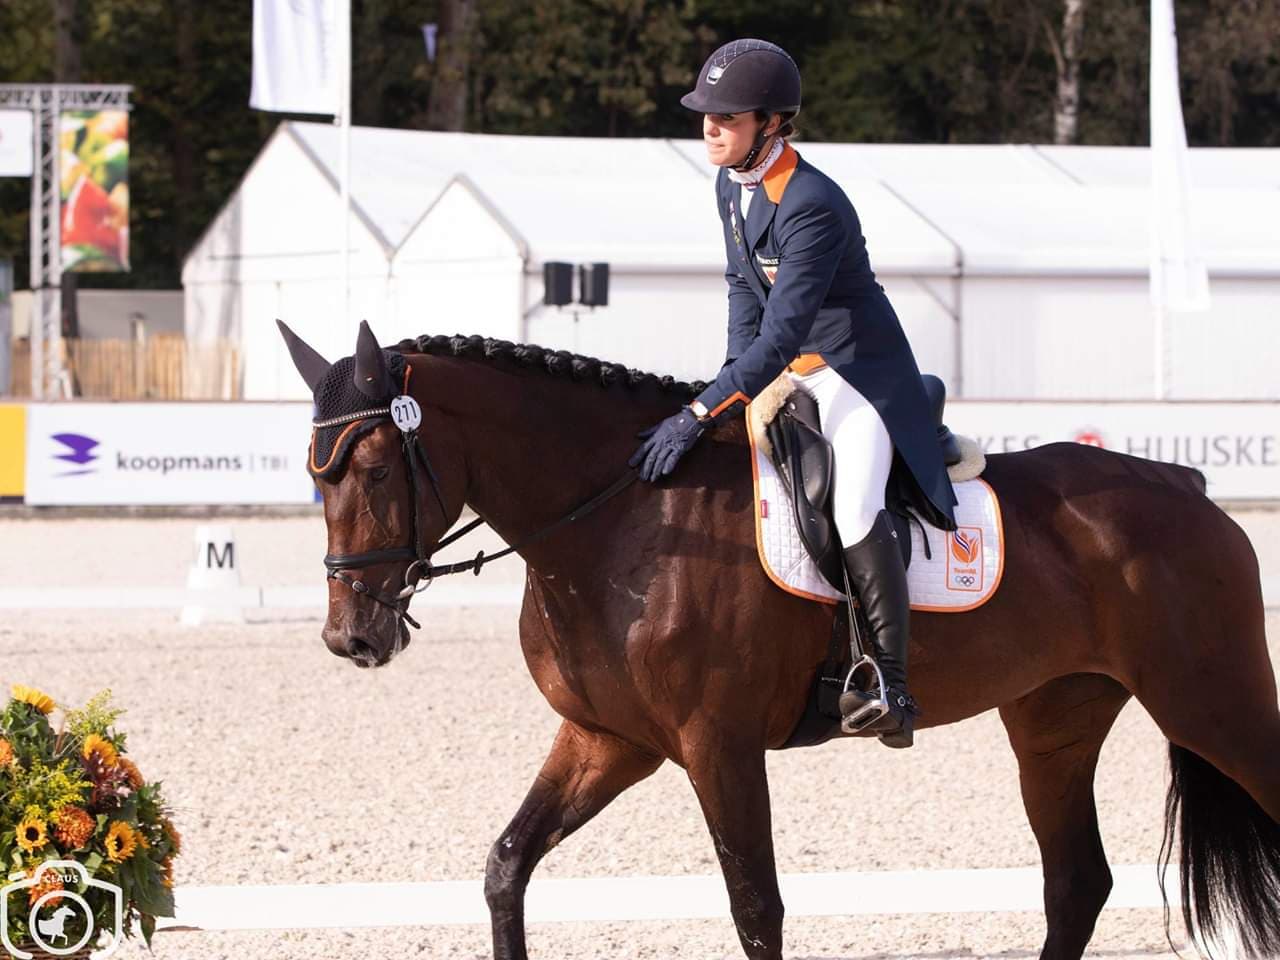 Merel Blom voorlopig twaalfde op WK eventing Jonge paarden